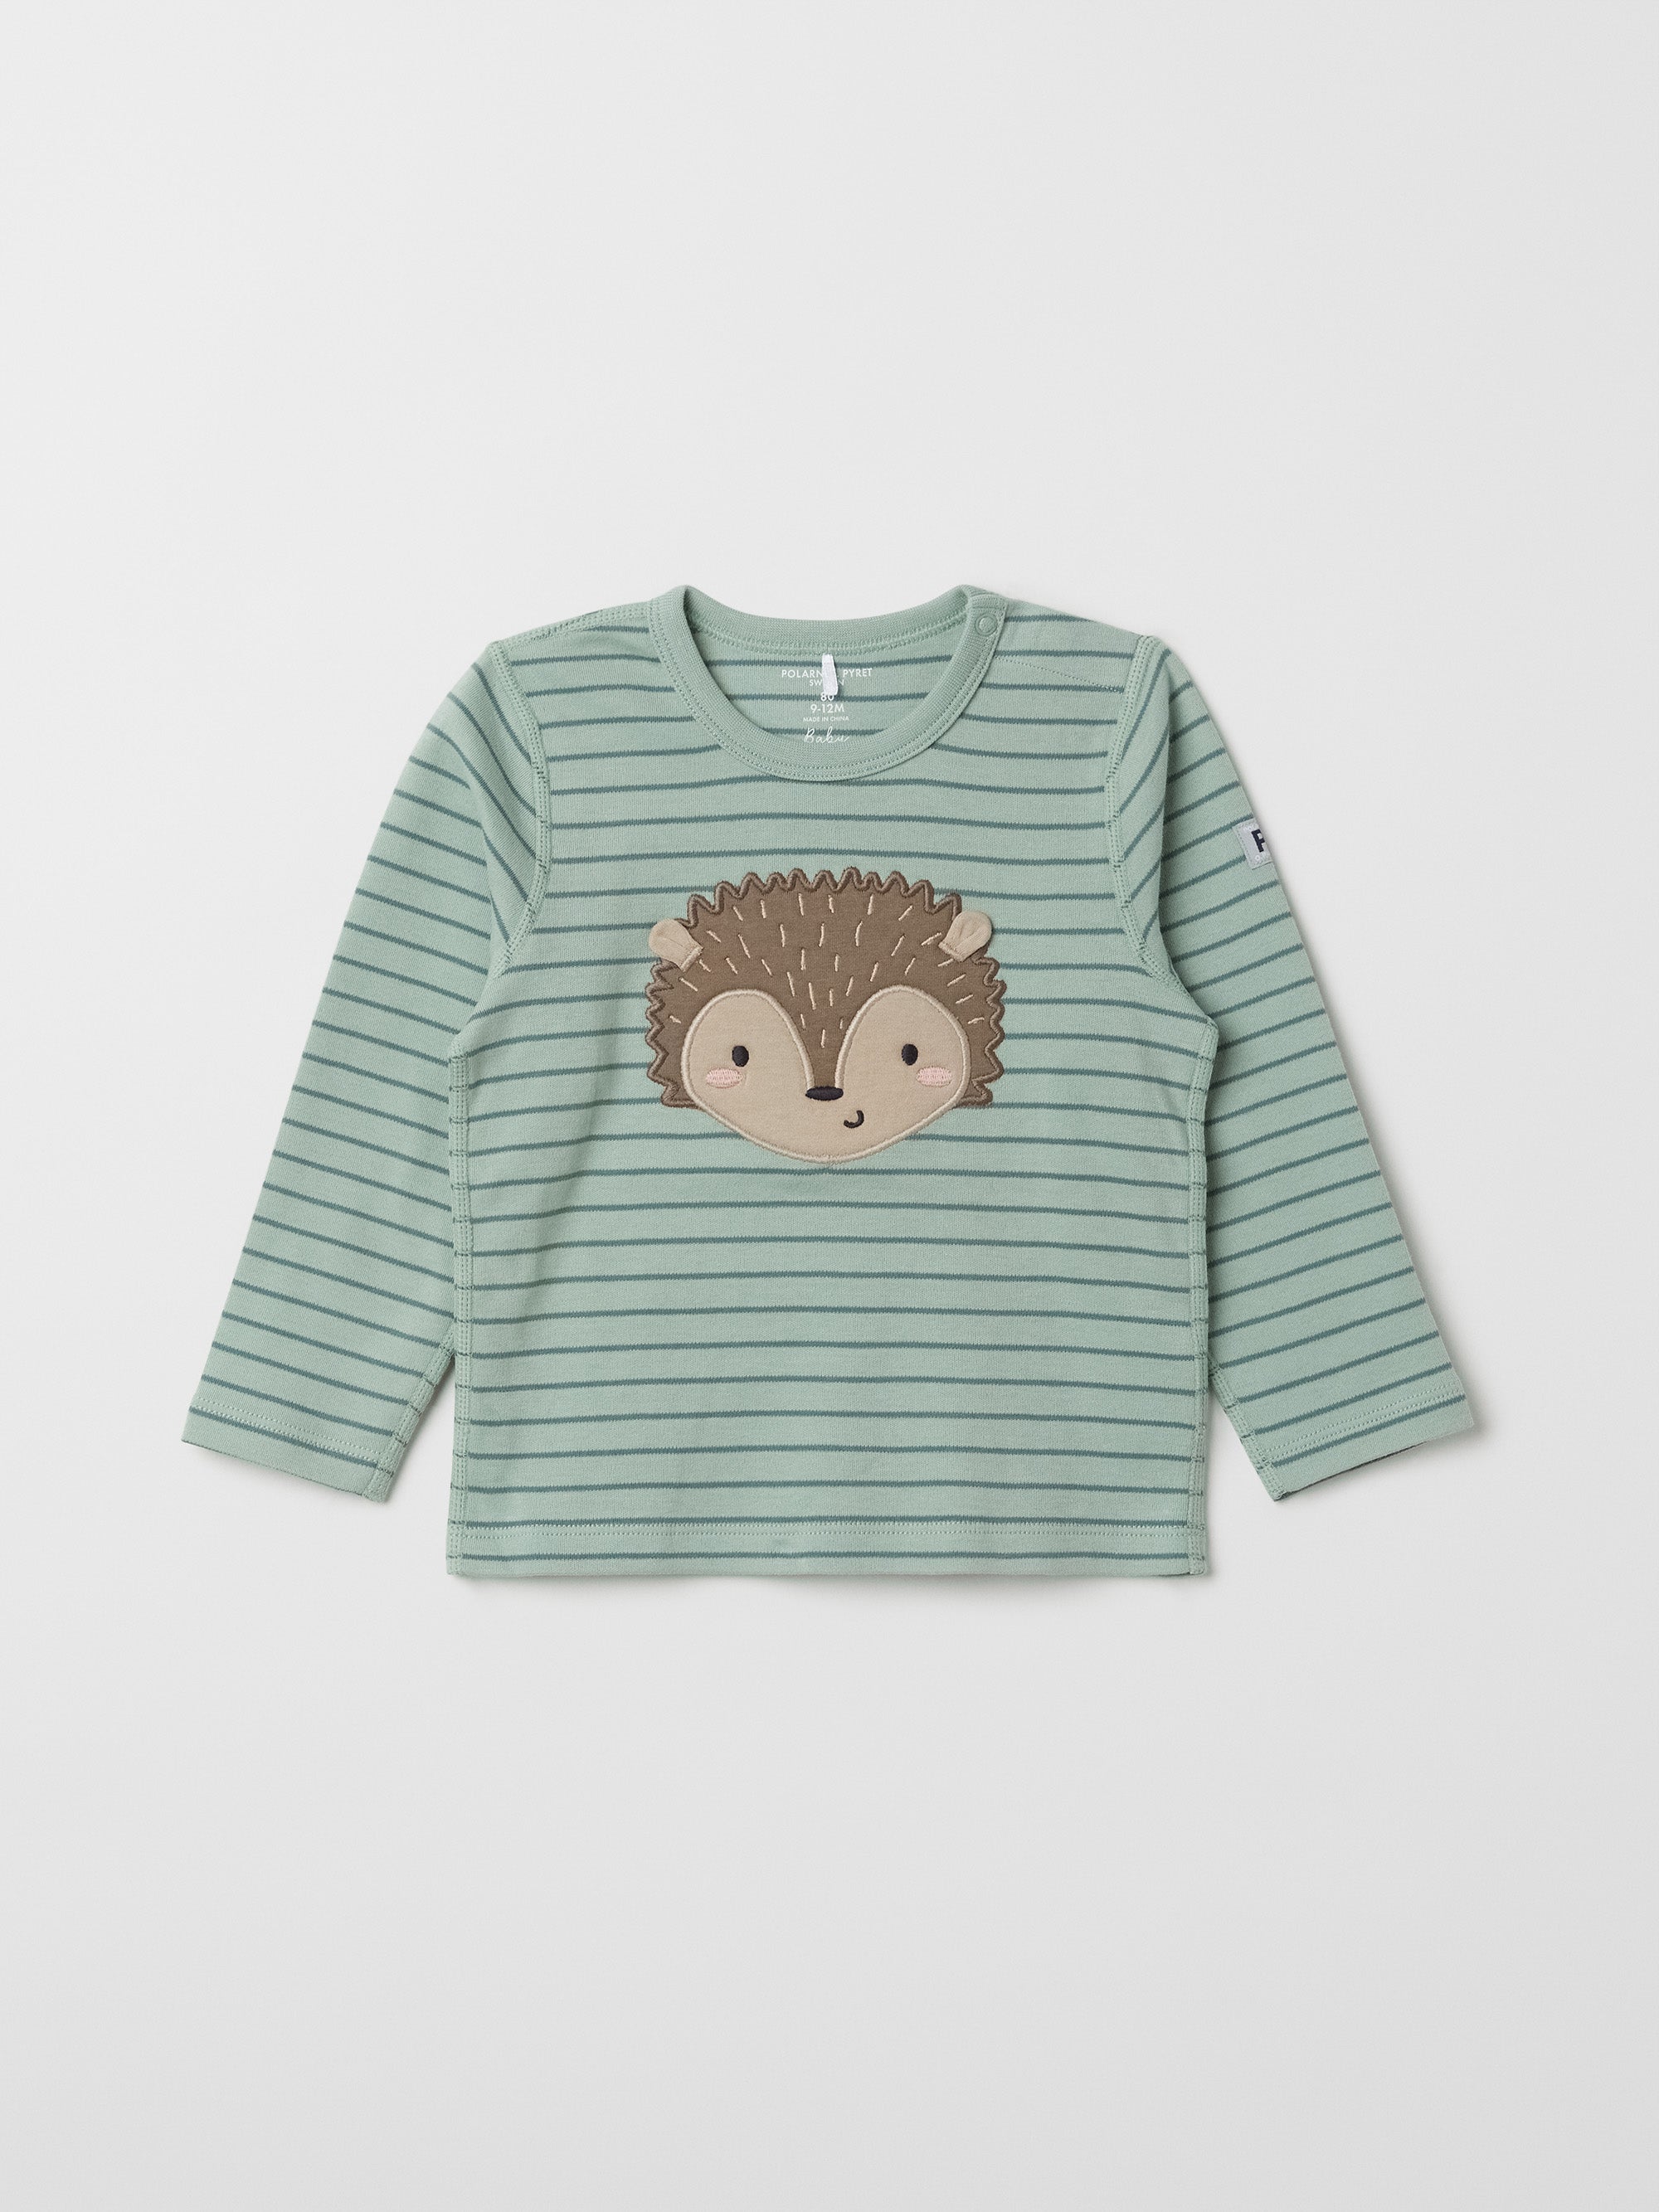 Hedgehog Applique Baby Top